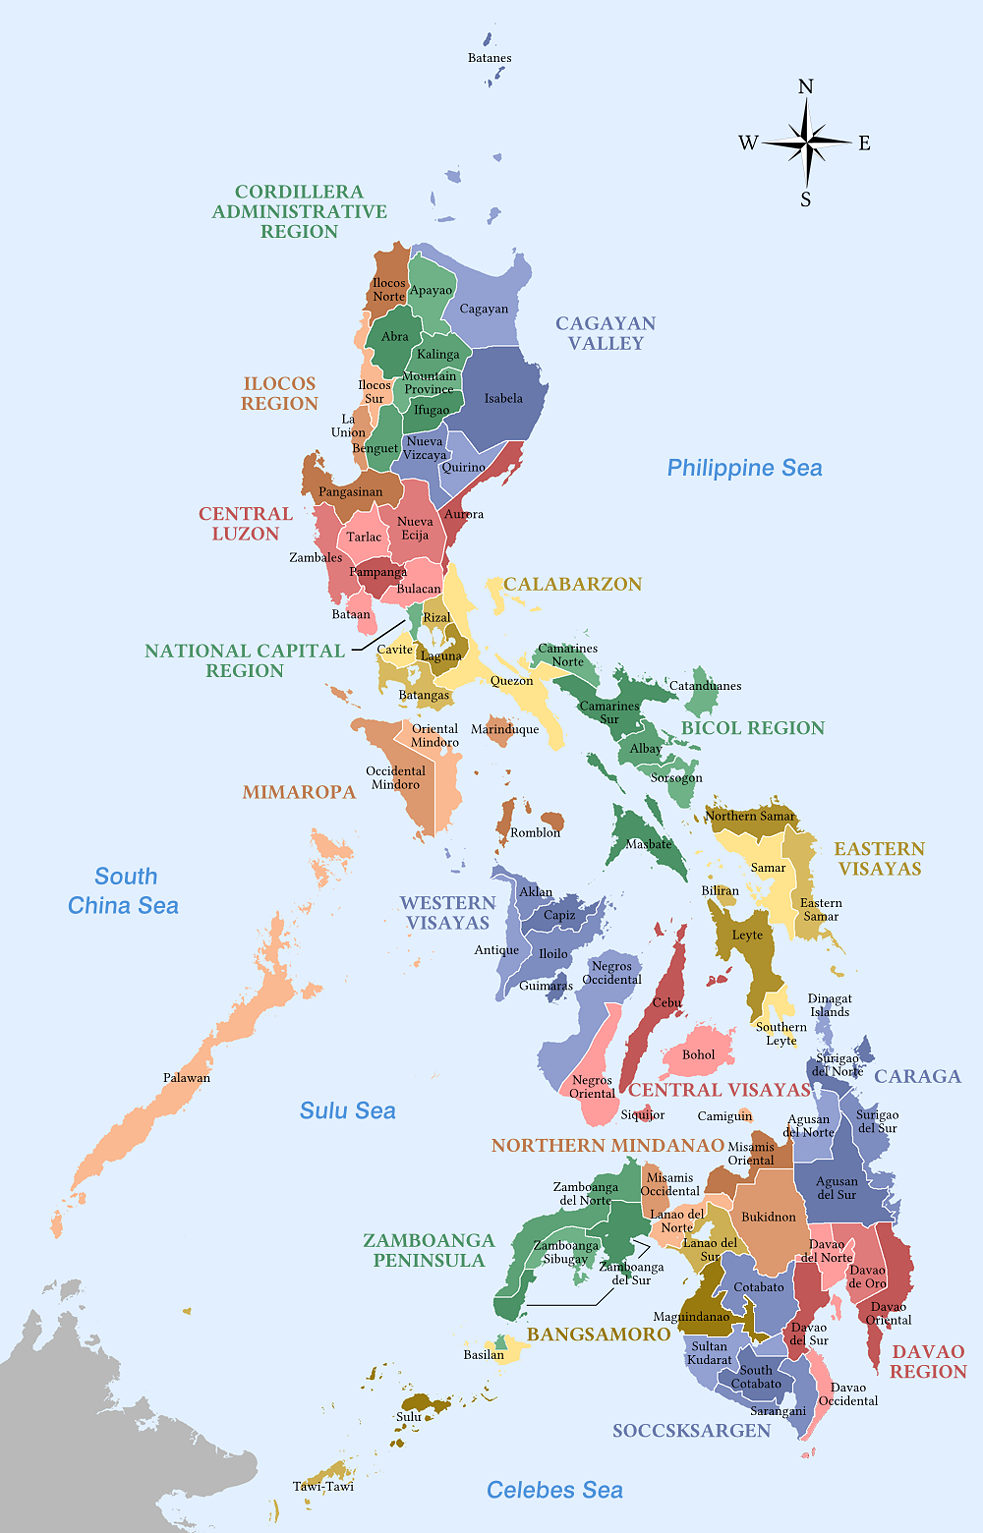 Eine Karte der verschiedenen Regionen und Provinzen der Philippinen. 